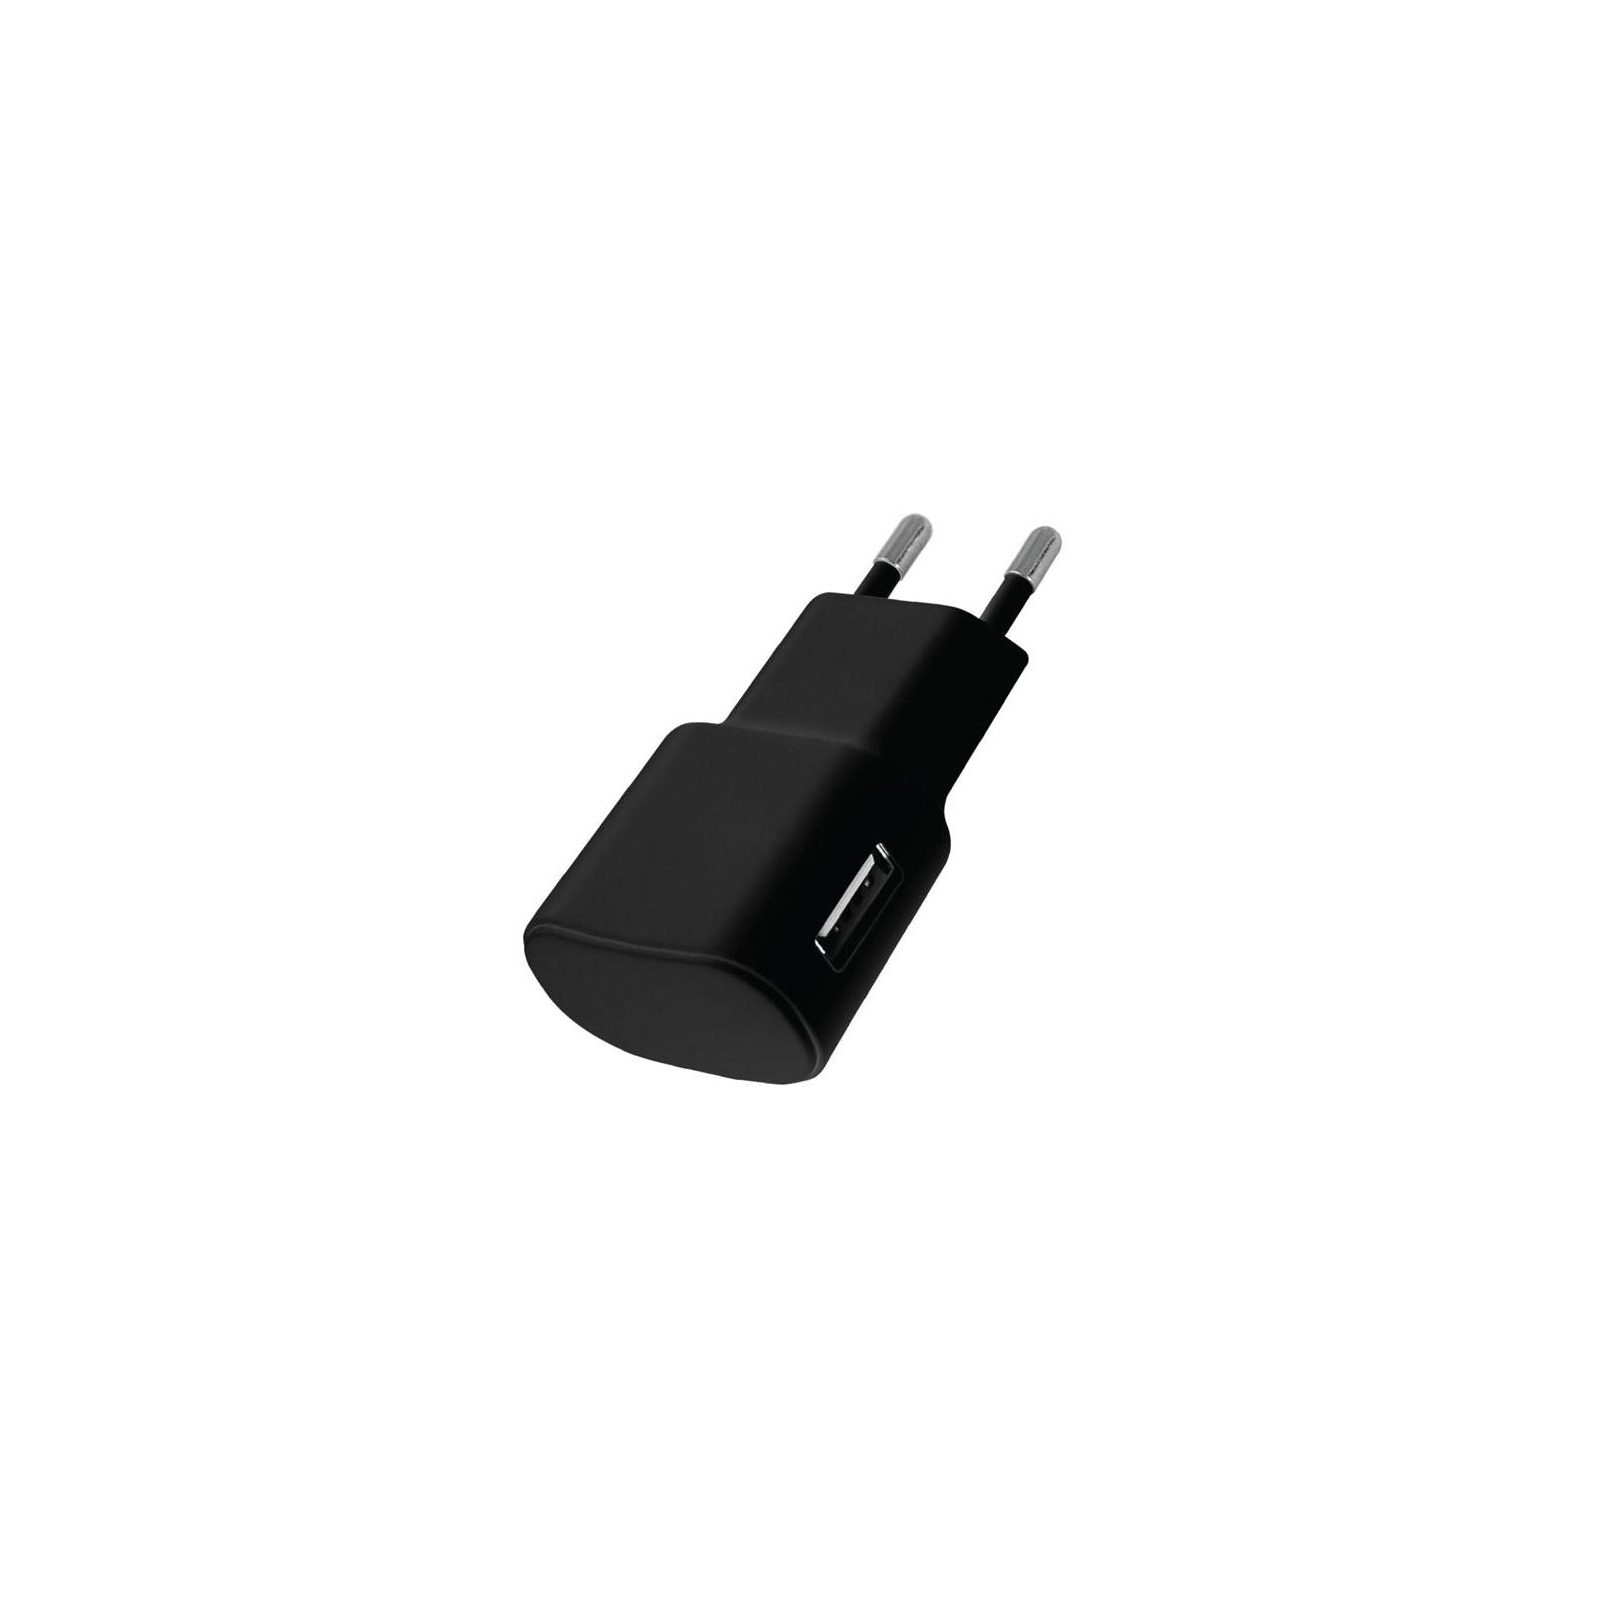 Зарядний пристрій Florence USB, 1.0A black (FW-1U010B)